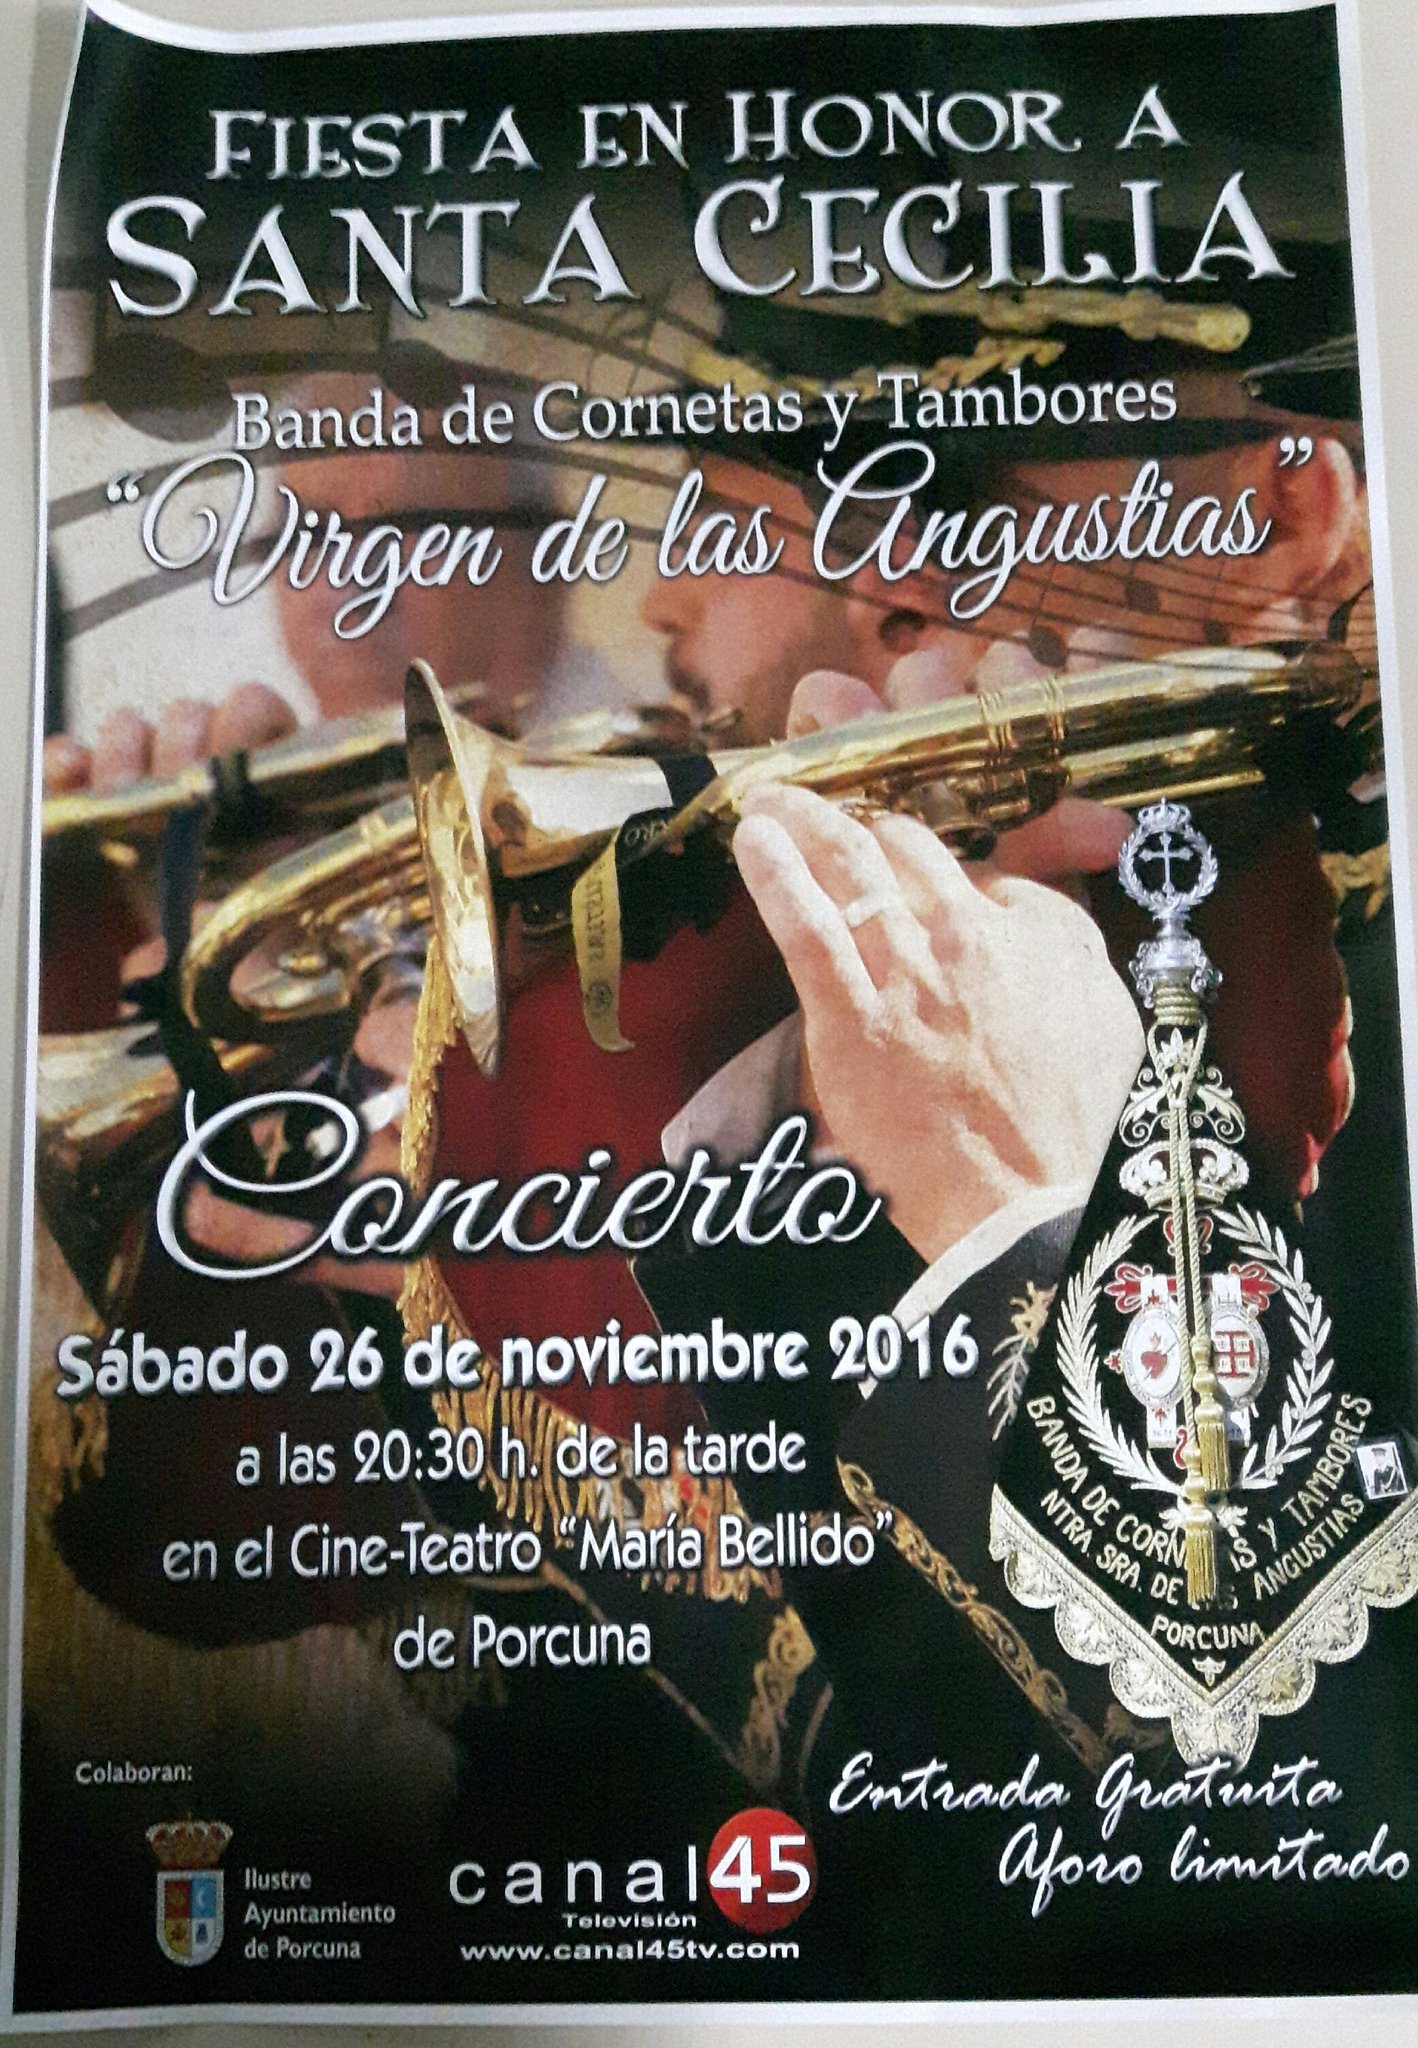 Concierto en Honor a Santa Cecilia de la Banda CCyTT "Virgen de las Angustias"